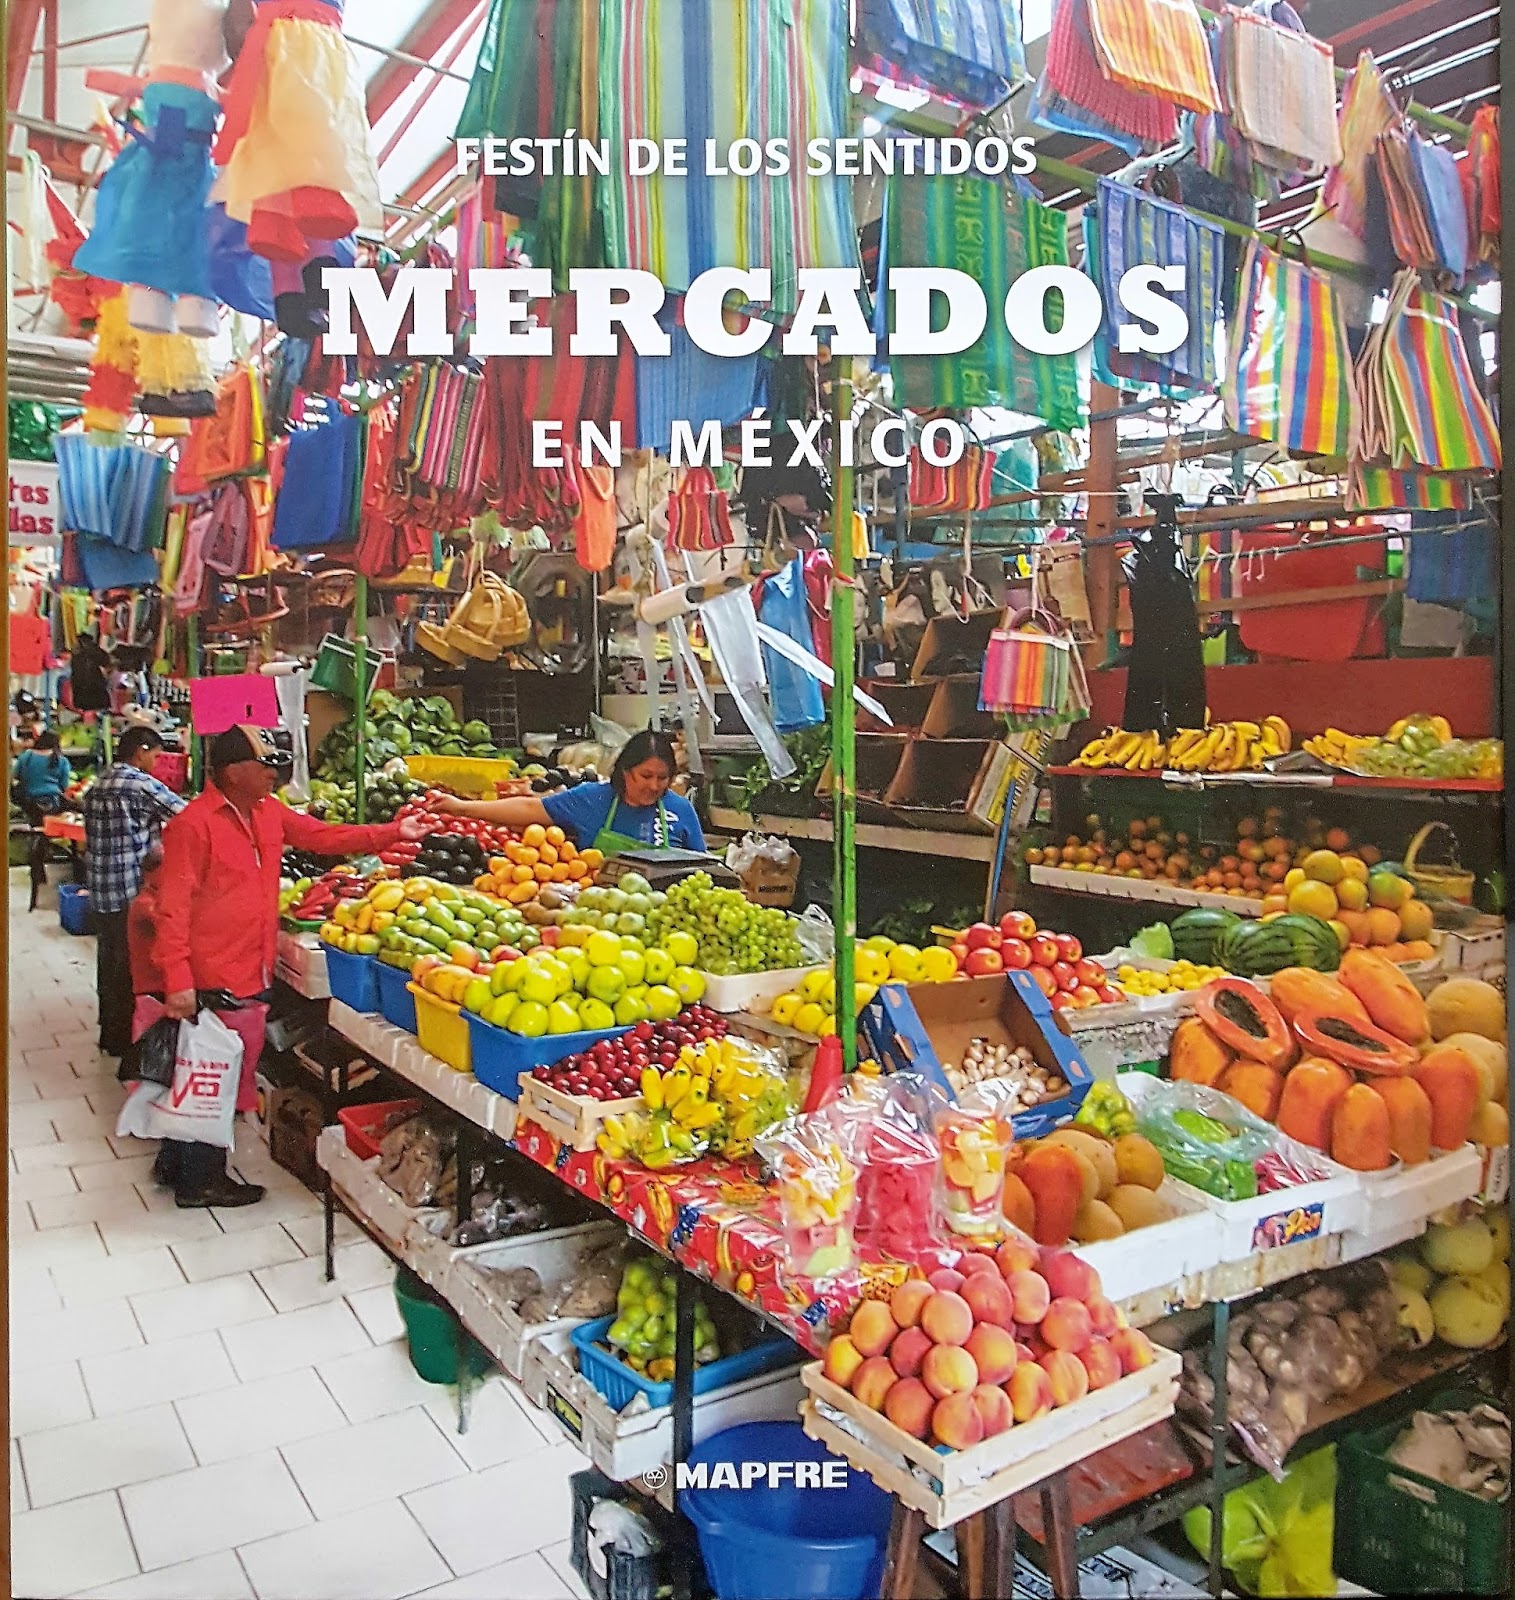 Mercados en México. El festín de los sentidos